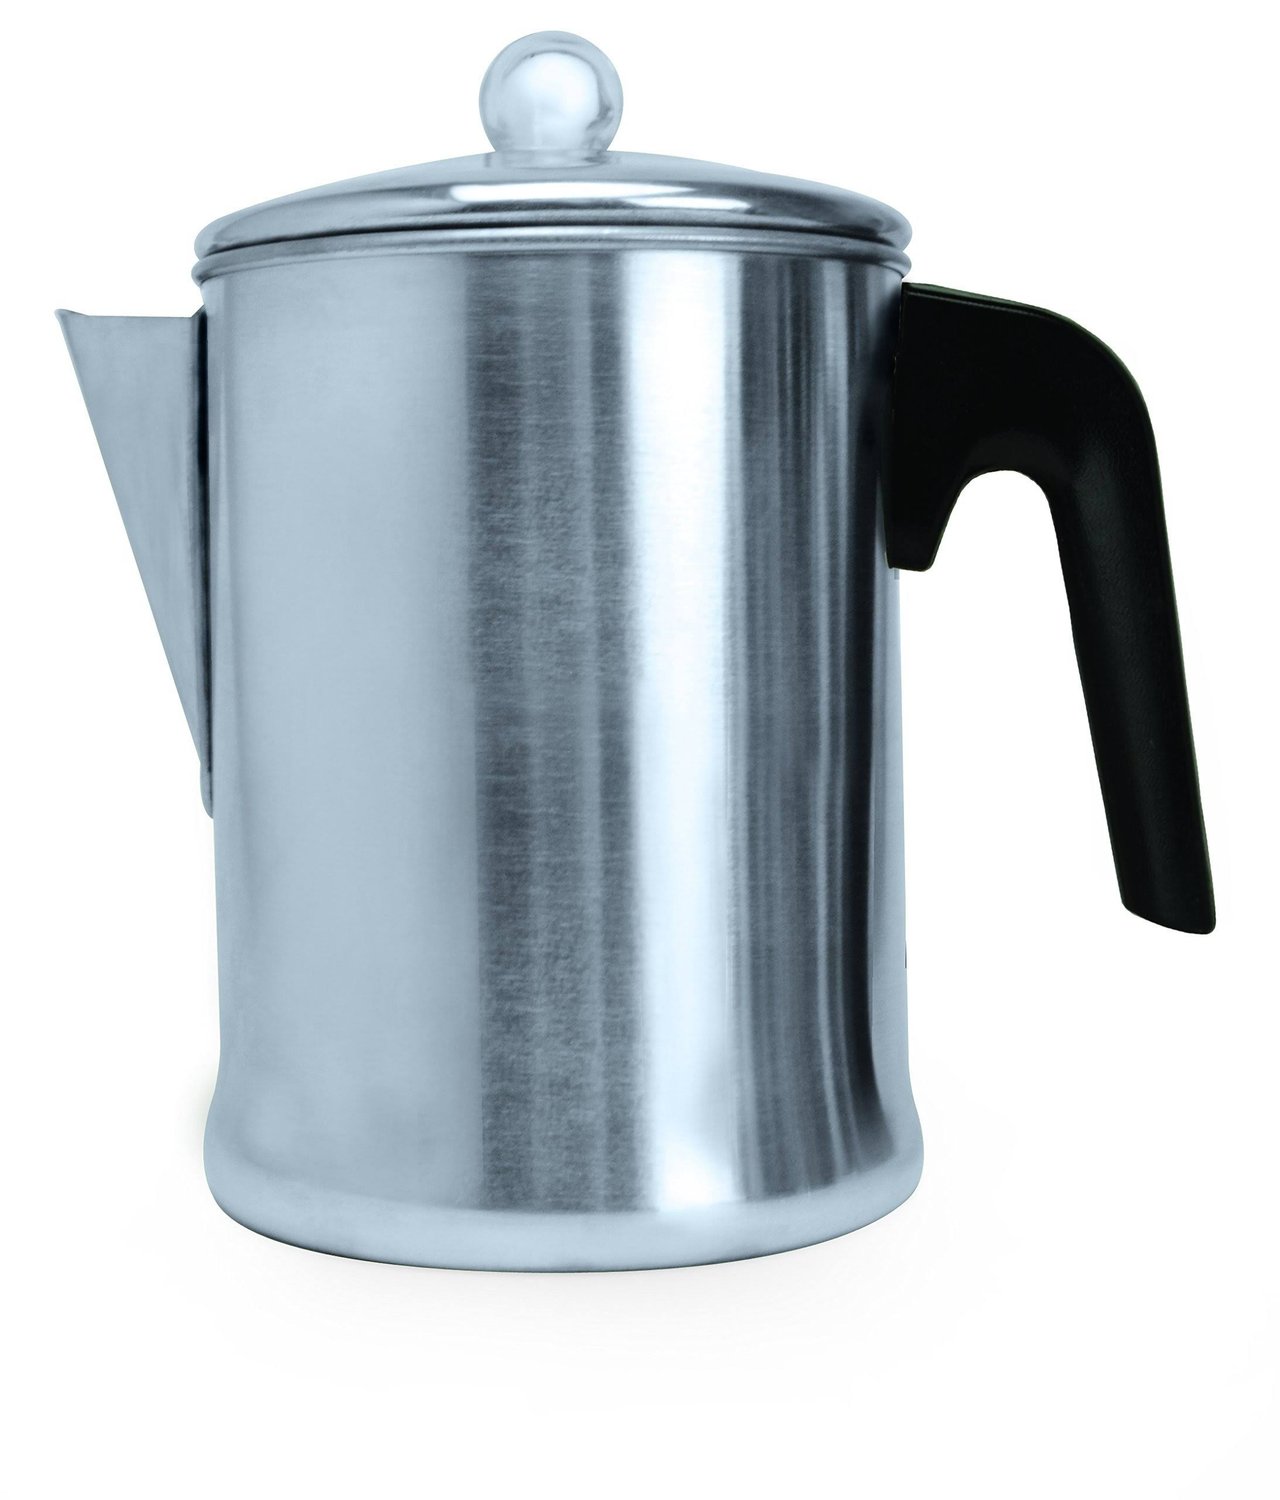 5 Primula Today 9-Cup Aluminum Coffee Percolator